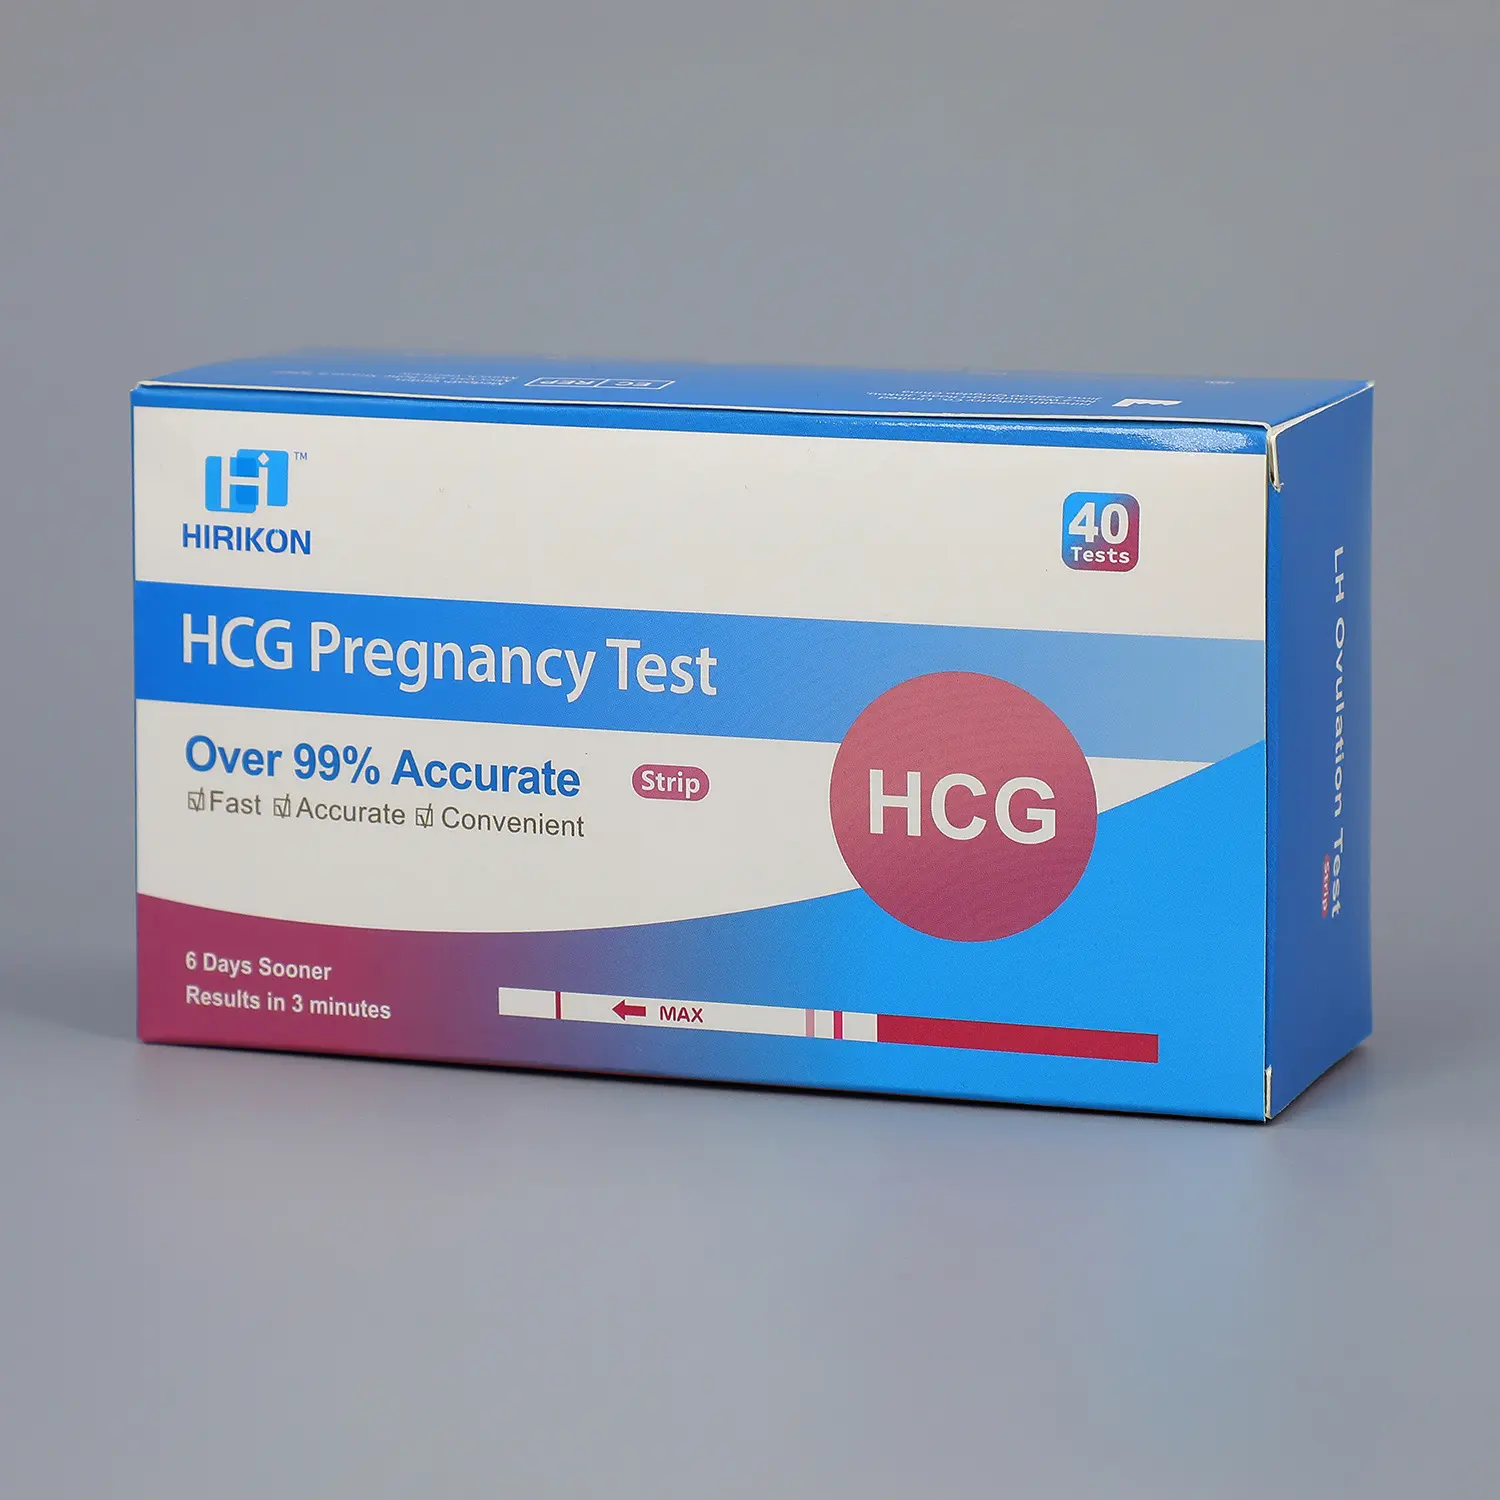 एक चरण गर्भावस्था परीक्षण किट एचसीजी डिजिटल/स्ट्रिप/मिडस्ट्रीम रैपिड डायग्नोस्टिक्स पैथोलॉजिकल विश्लेषण उपकरण